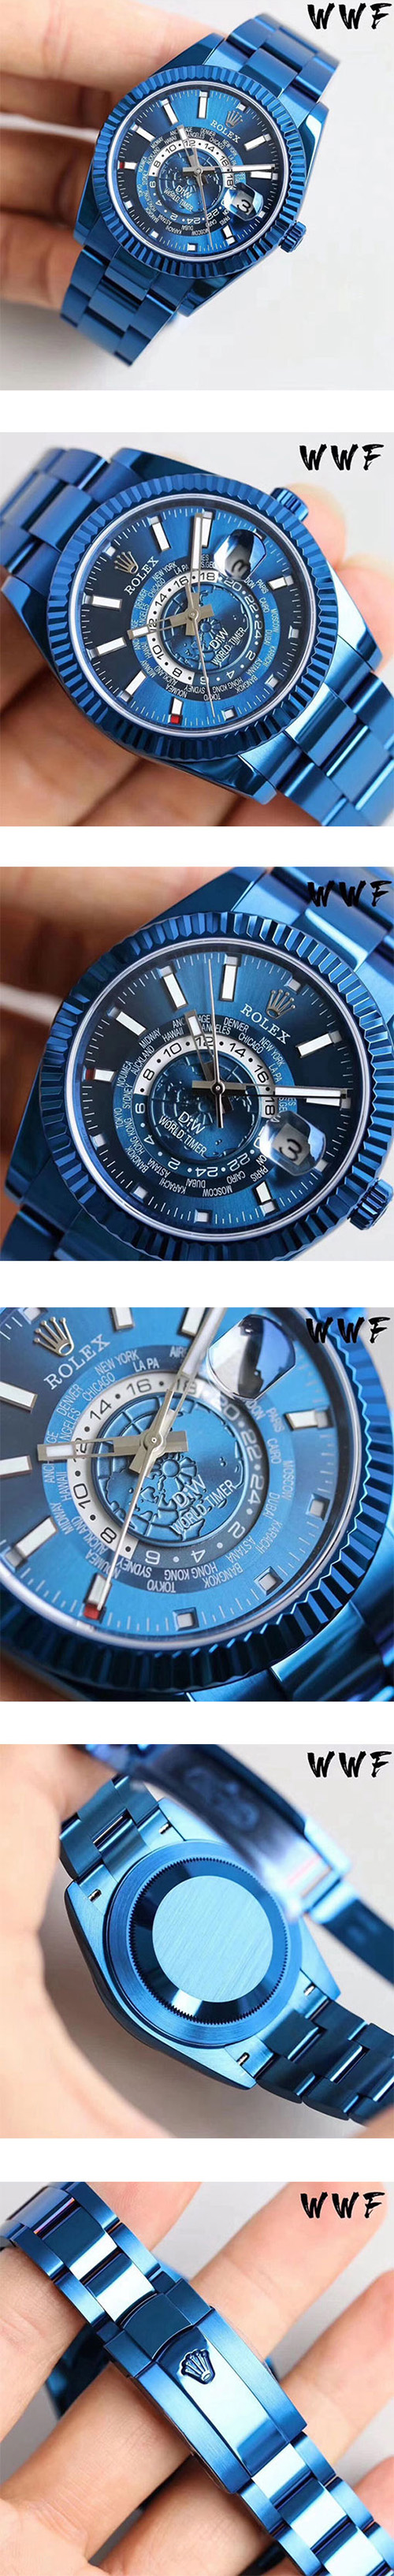 レディース/メンズ腕時計【WWF 腕時計を改造する】ロレックス スカイドゥエラー コピー時計